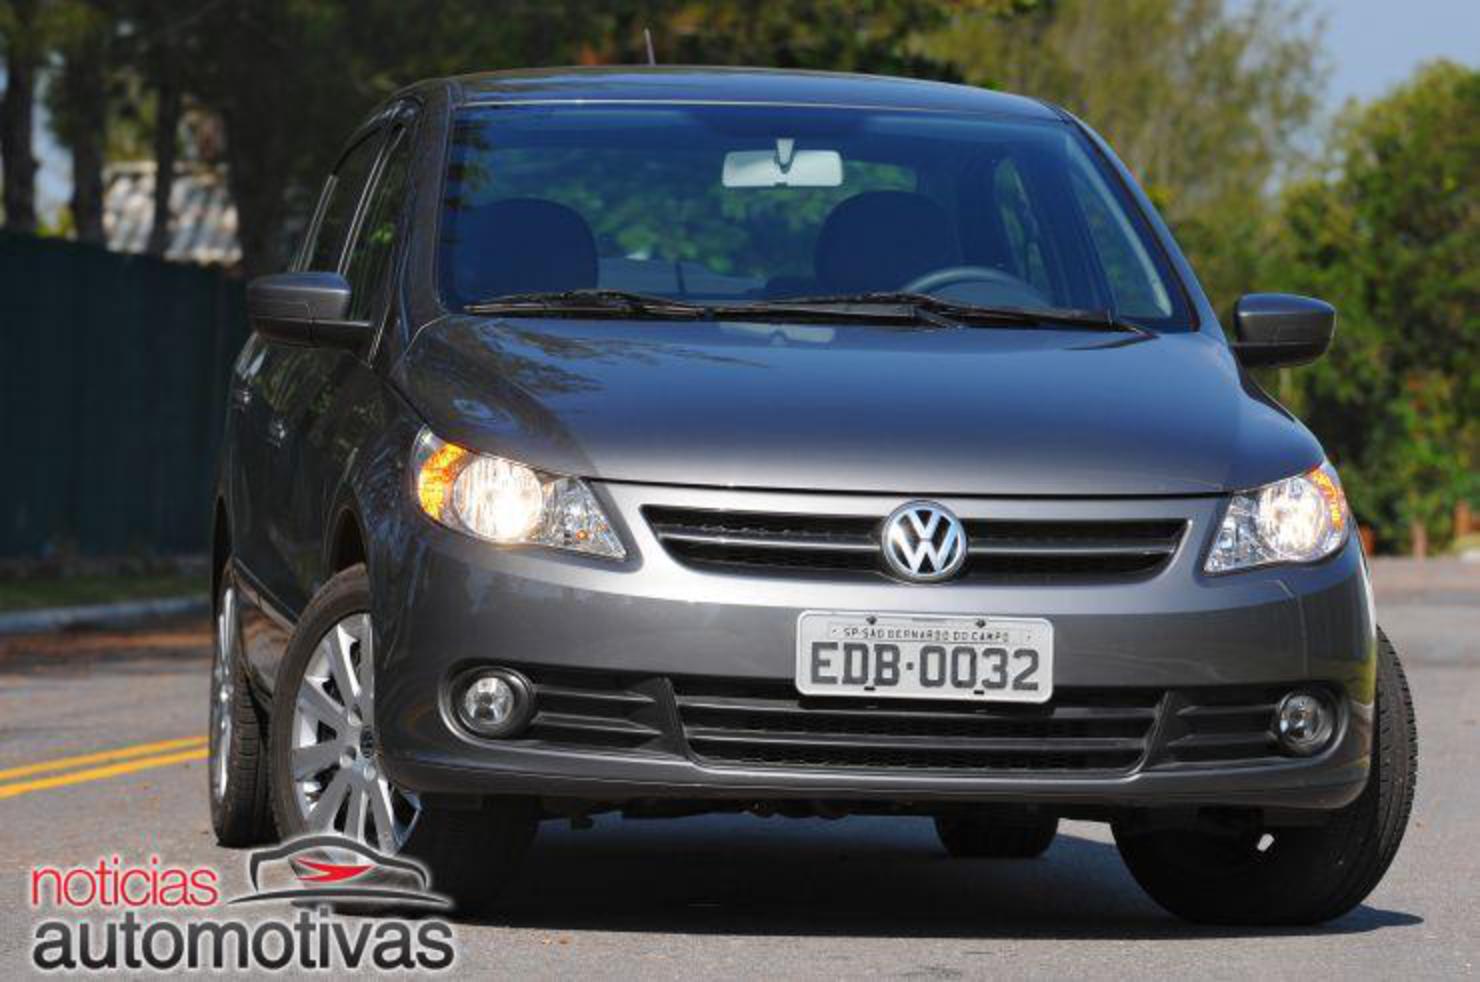 Volkswagen Voyage Trend. View Download Wallpaper. 740x491. Comments